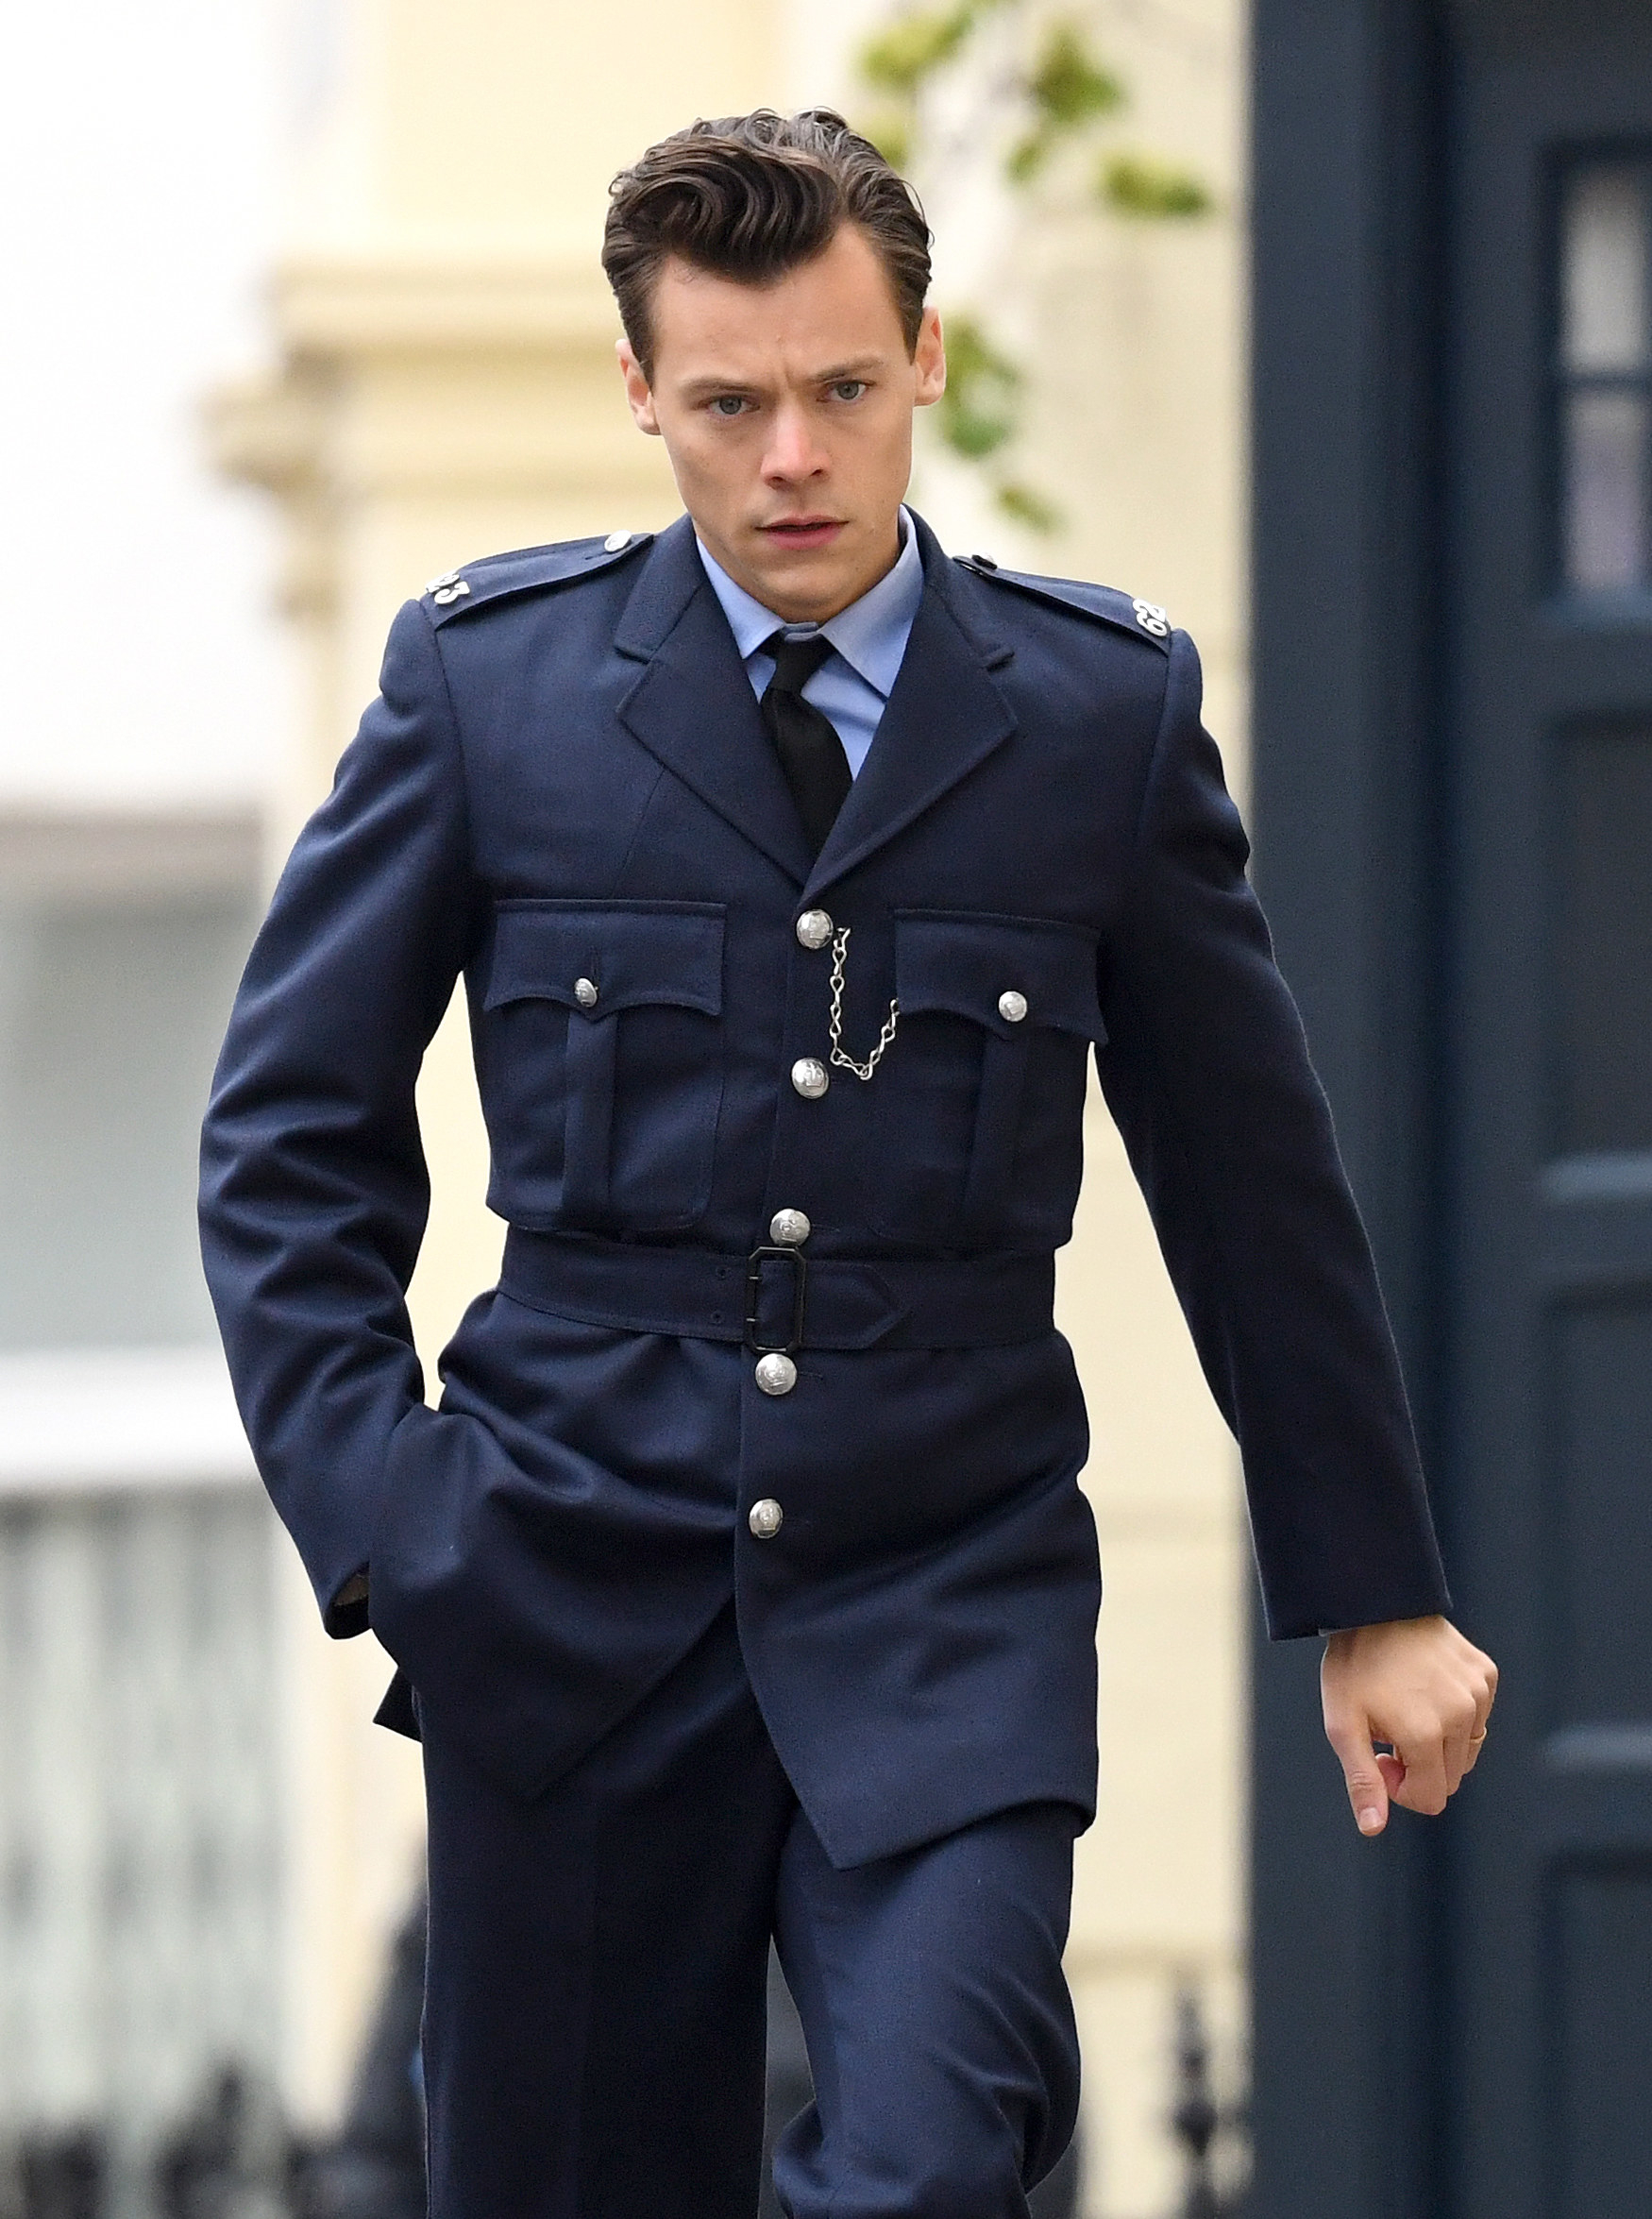 Harry in uniform walking down the street